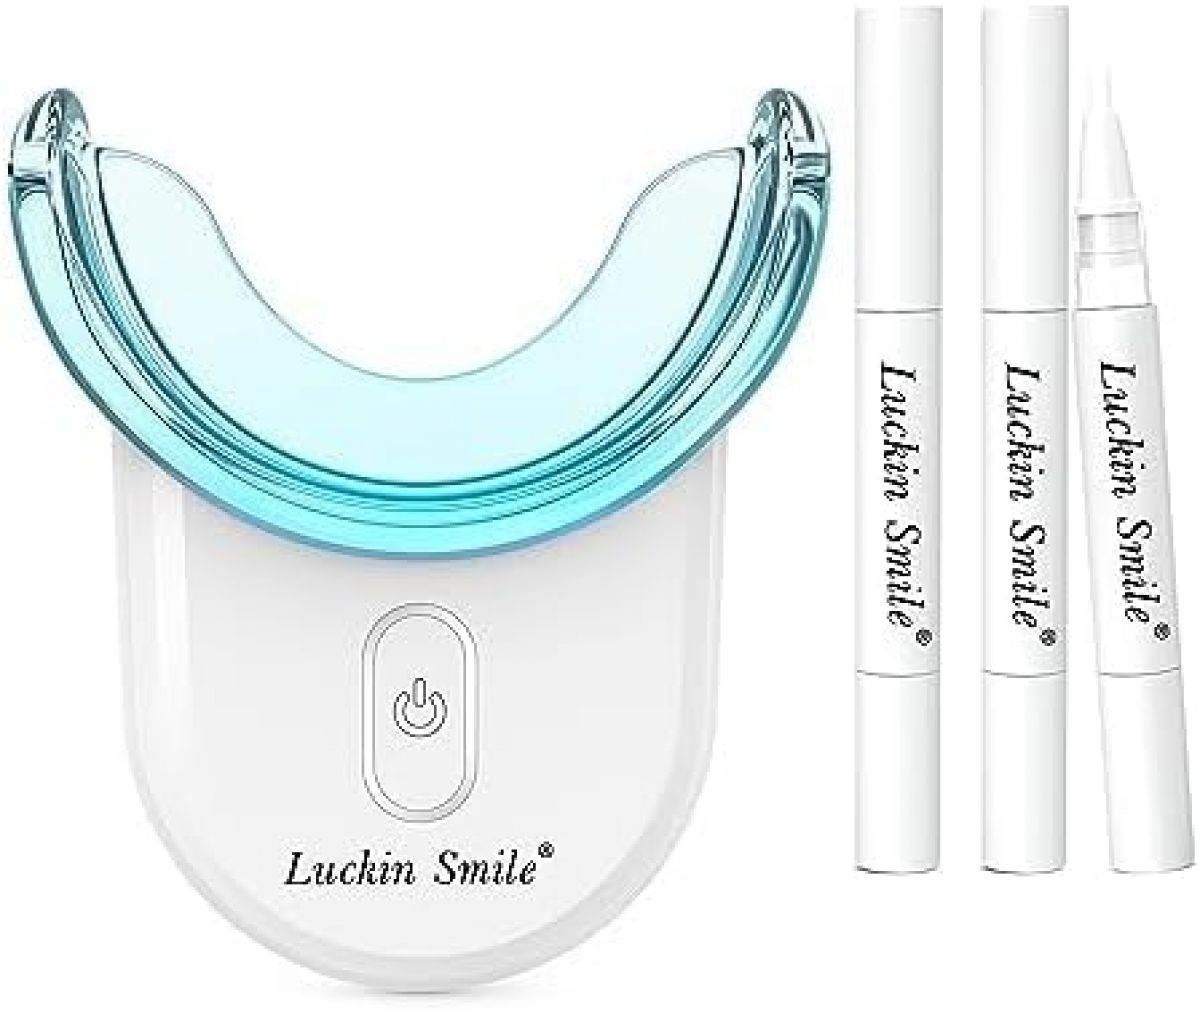 Домашний набор для отбеливания зубов luckin smile, 3 отбеливающих гелевых ручки, белый